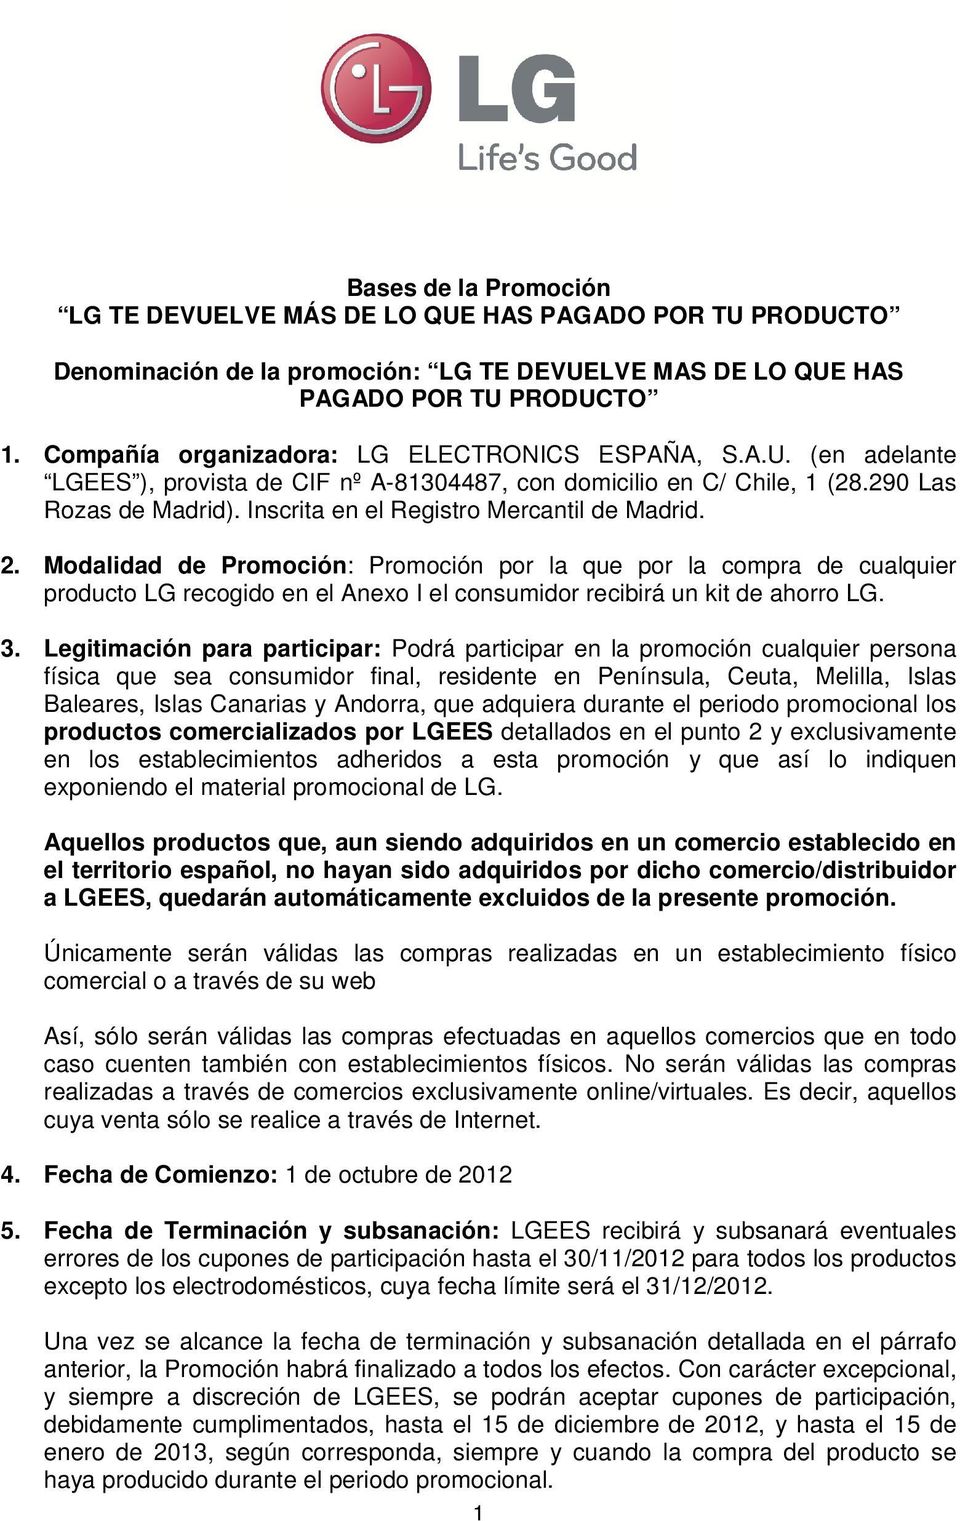 Inscrita en el Registro Mercantil de Madrid. 2. Modalidad de Promoción: Promoción por la que por la compra de cualquier producto LG recogido en el Anexo I el consumidor recibirá un kit de ahorro LG.